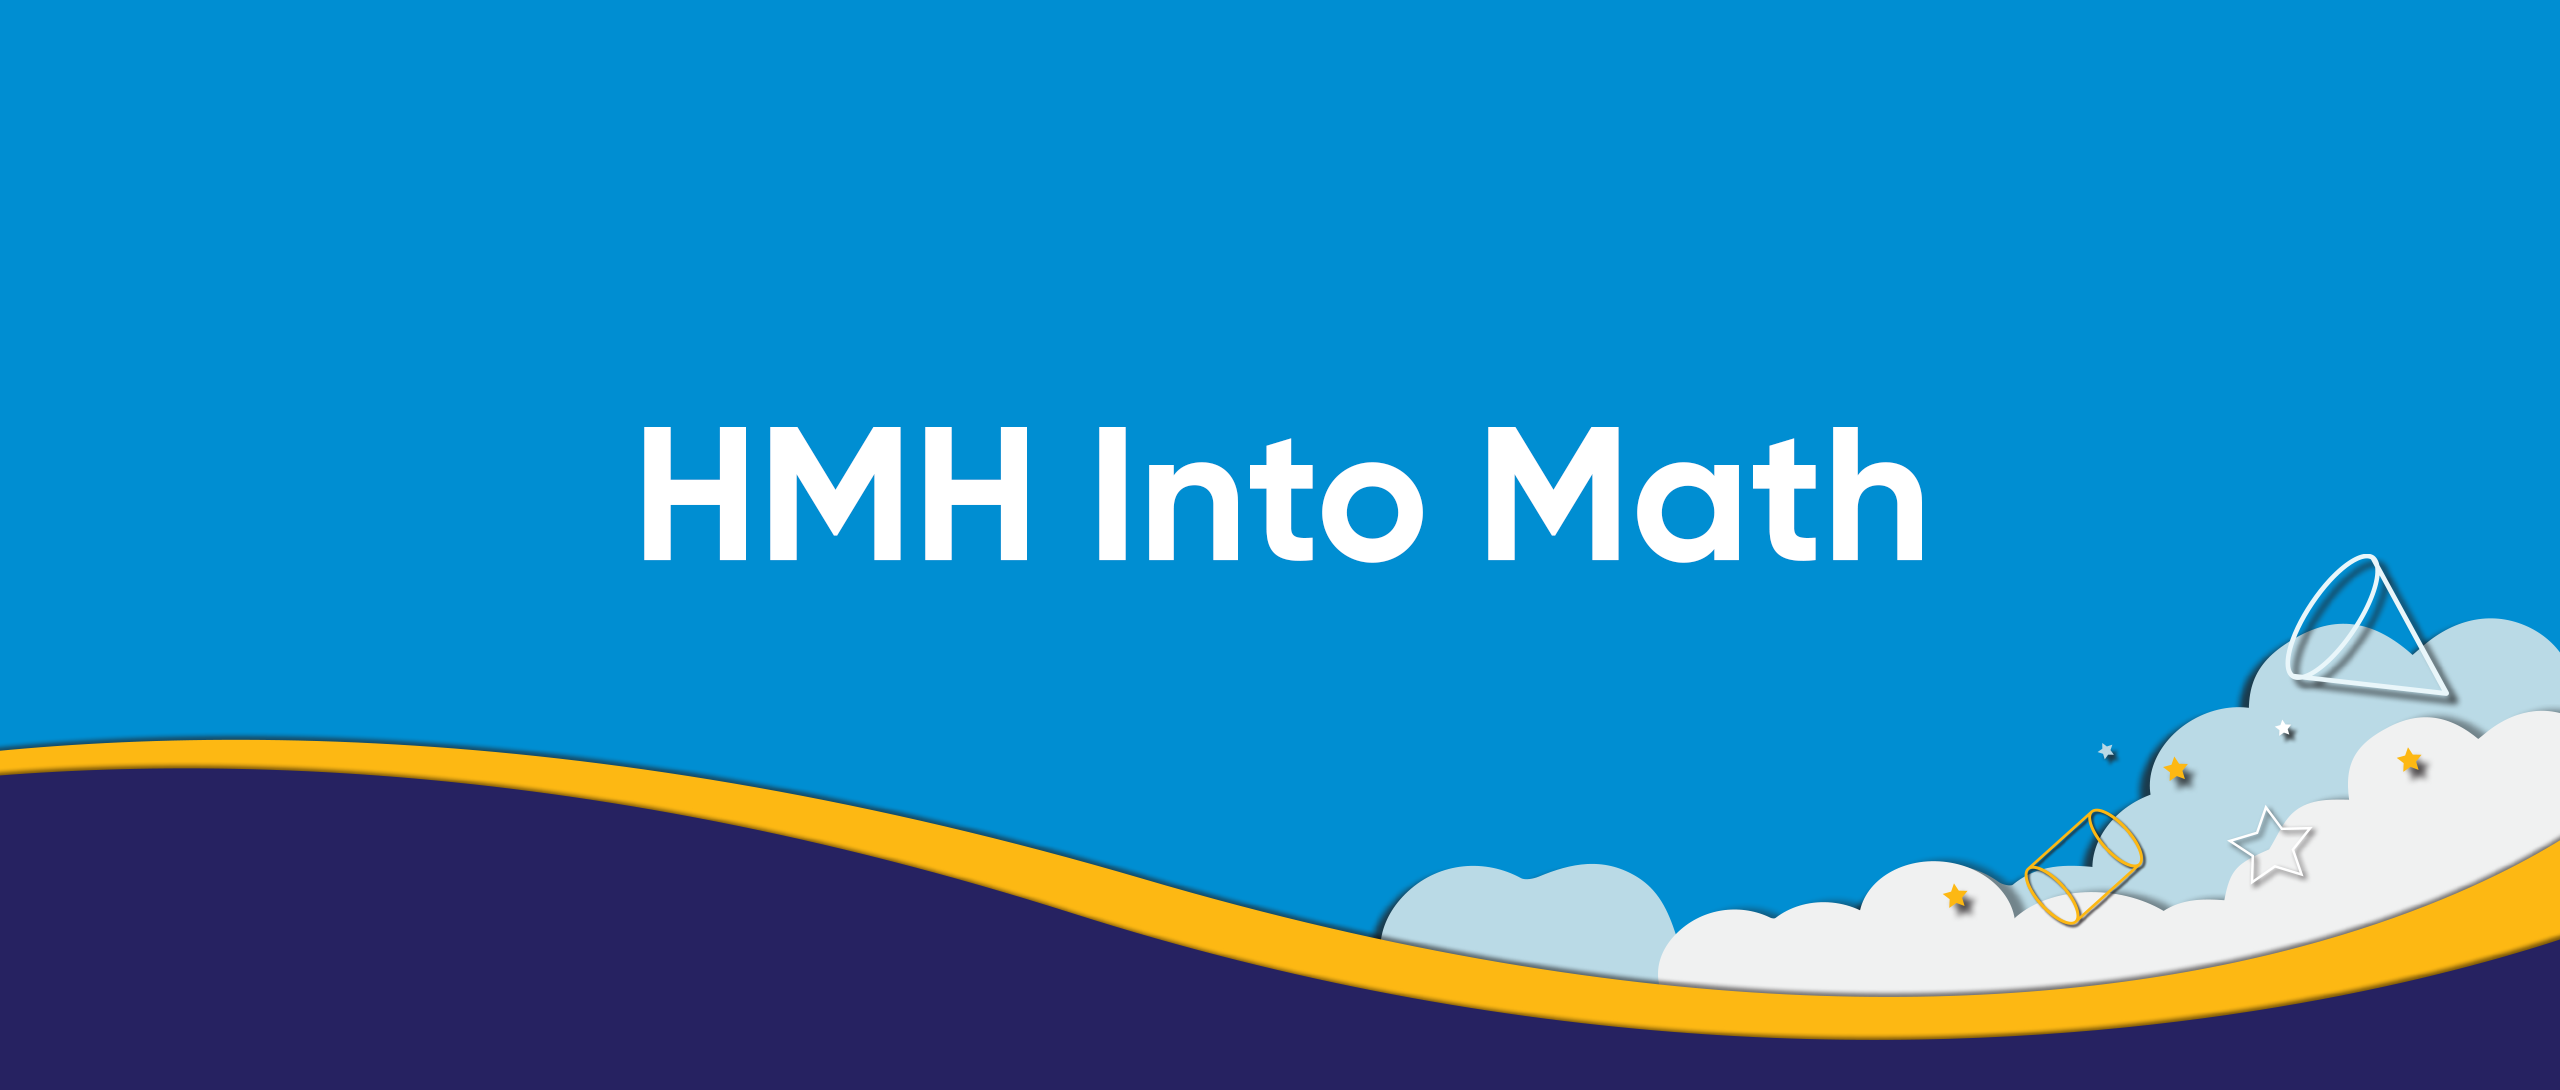 HMH Into Math logo